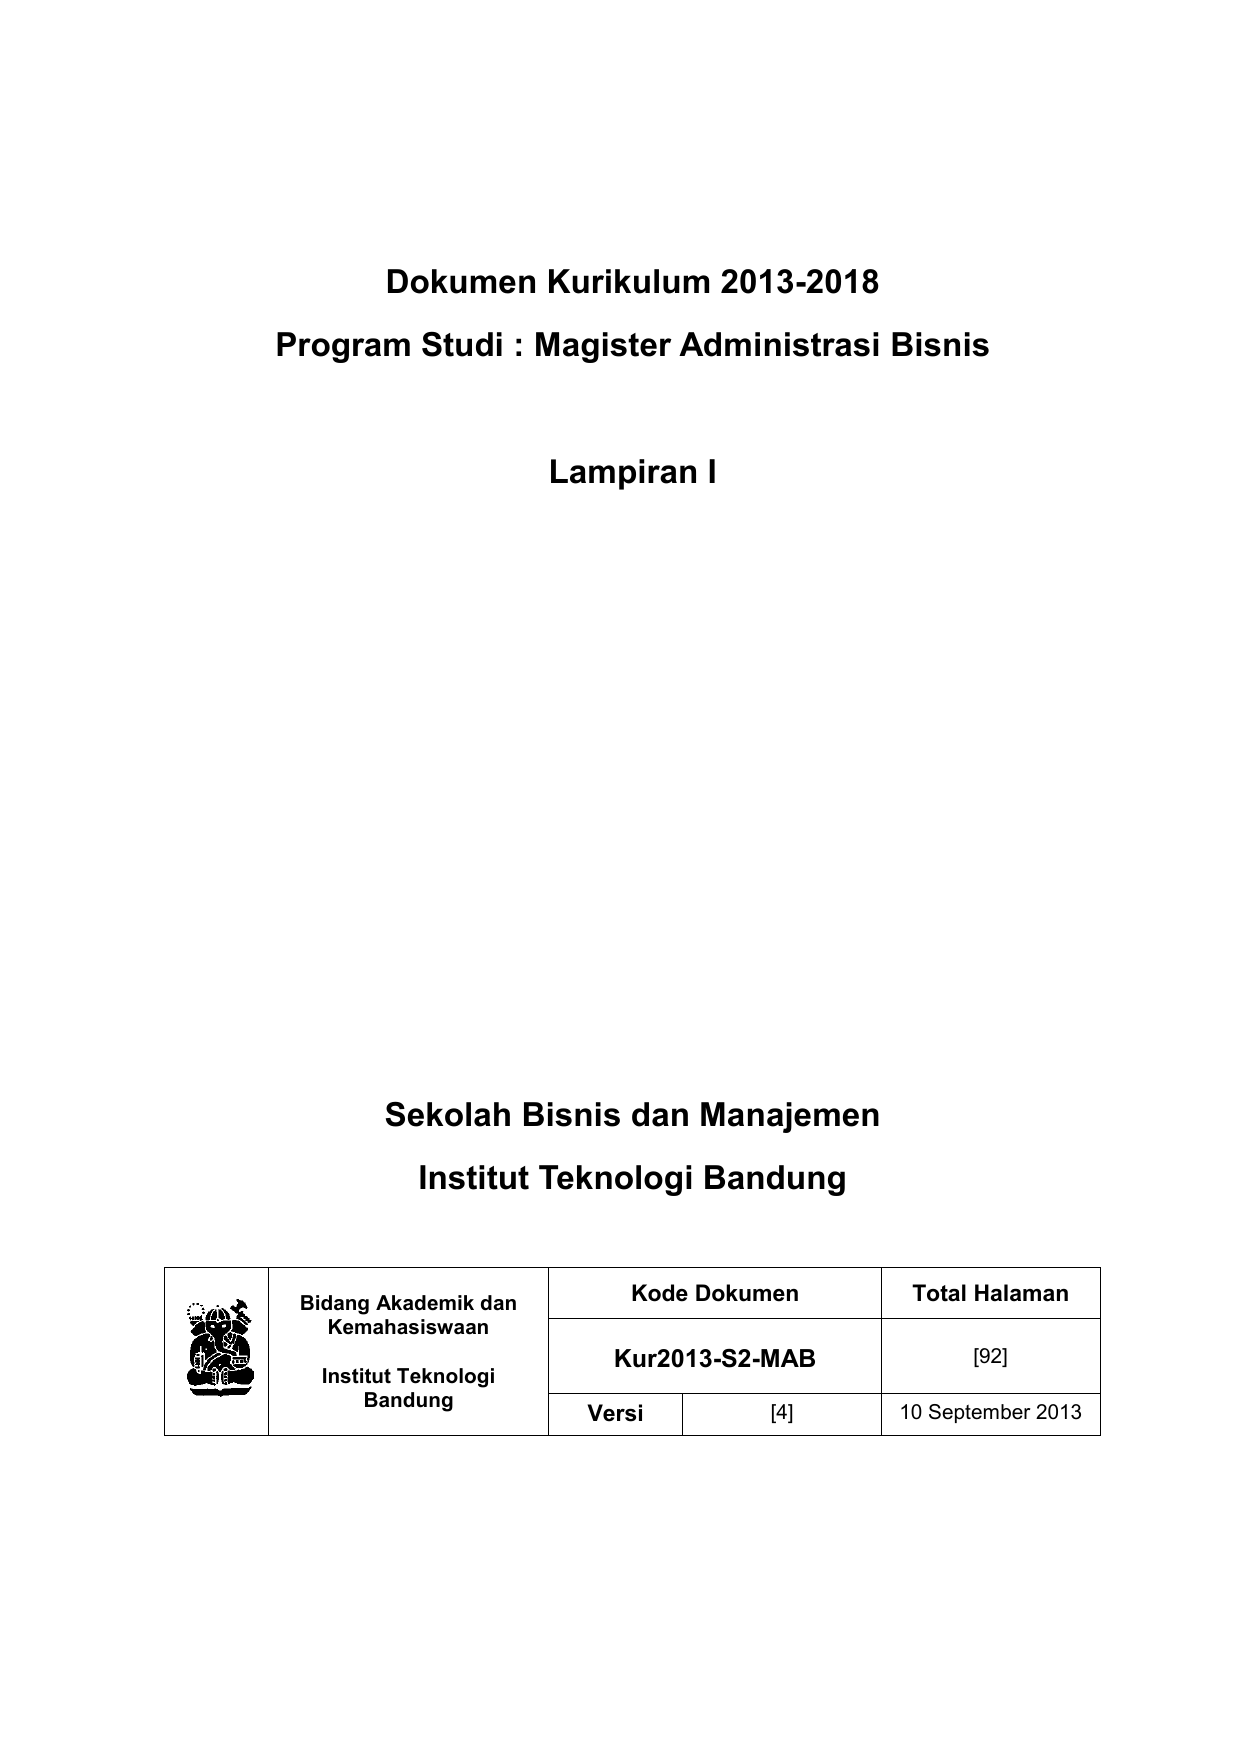 Dokumen Kurikulum 2013 2018 Program Studi Magister Administrasi Bisnis Lampiran I Sekolah Bisnis dan Manajemen Institut Teknologi Bandung Bidang Akademik